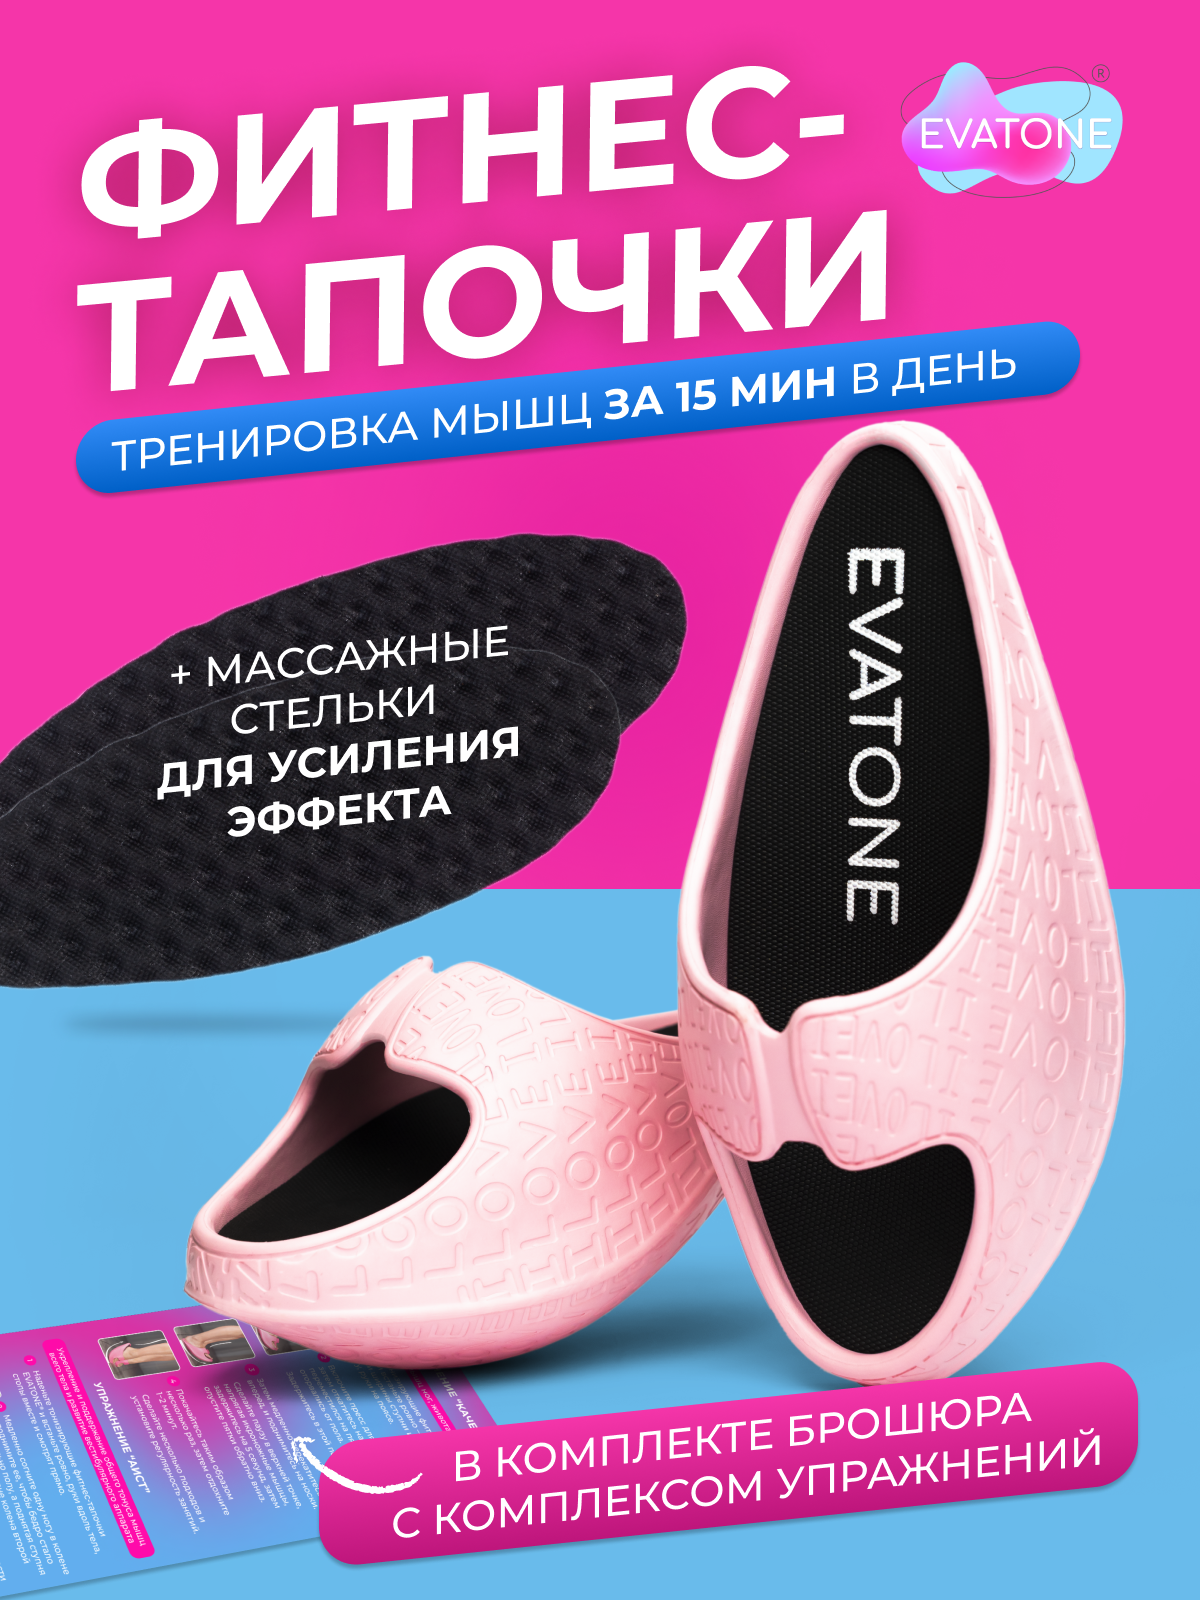 Баланс тапочки Эватон, цвет светло-розовый, размер 35-36, фитнес тапочки для тренировки мышц